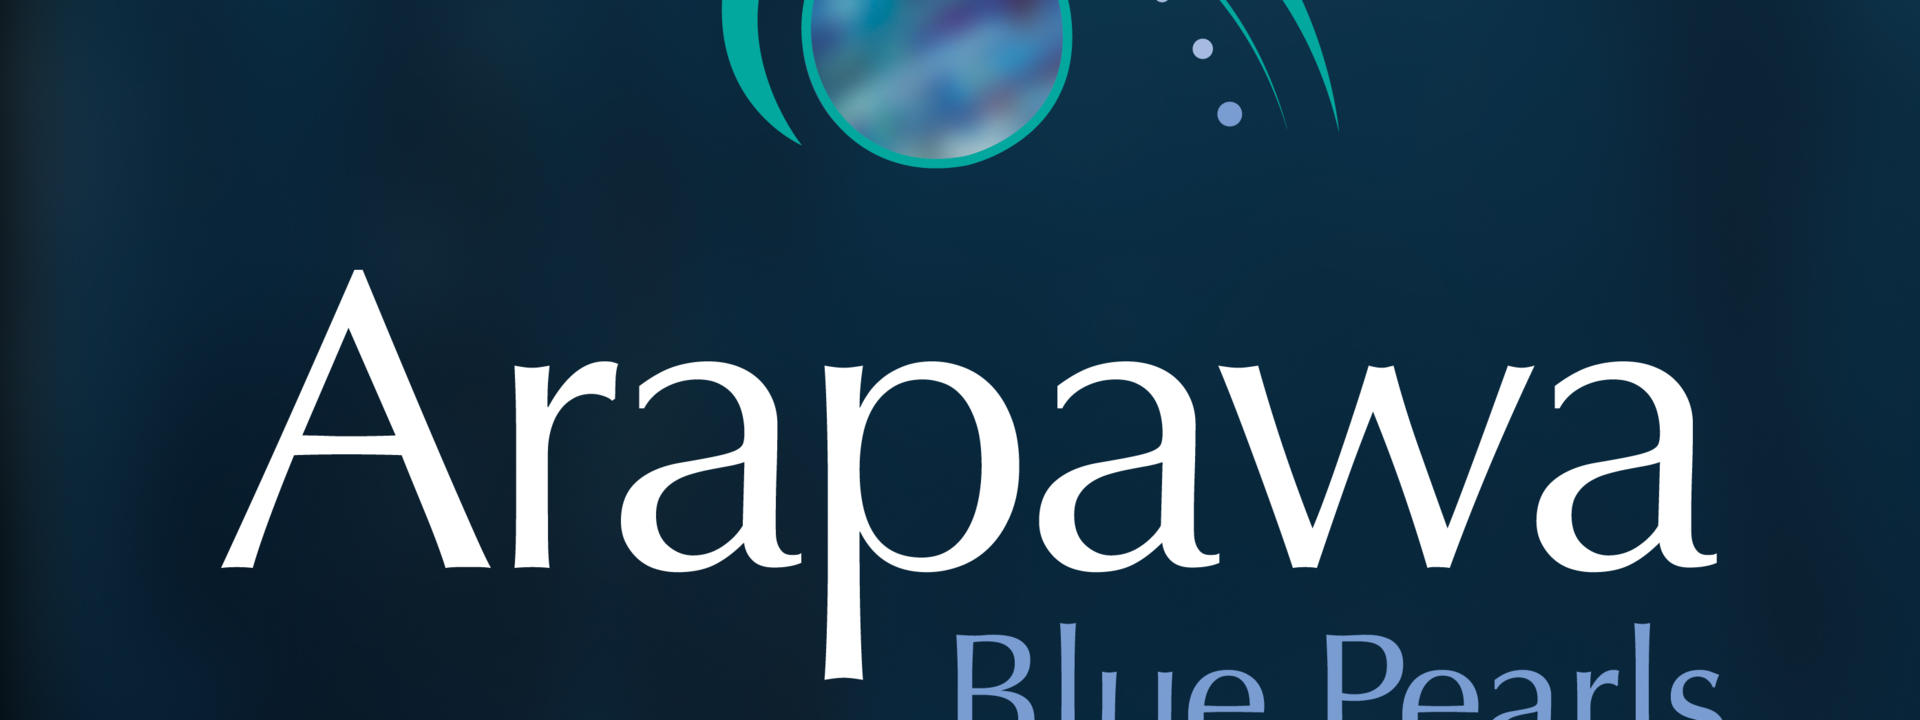 Arapawa RGB logo on blue_0.jpg